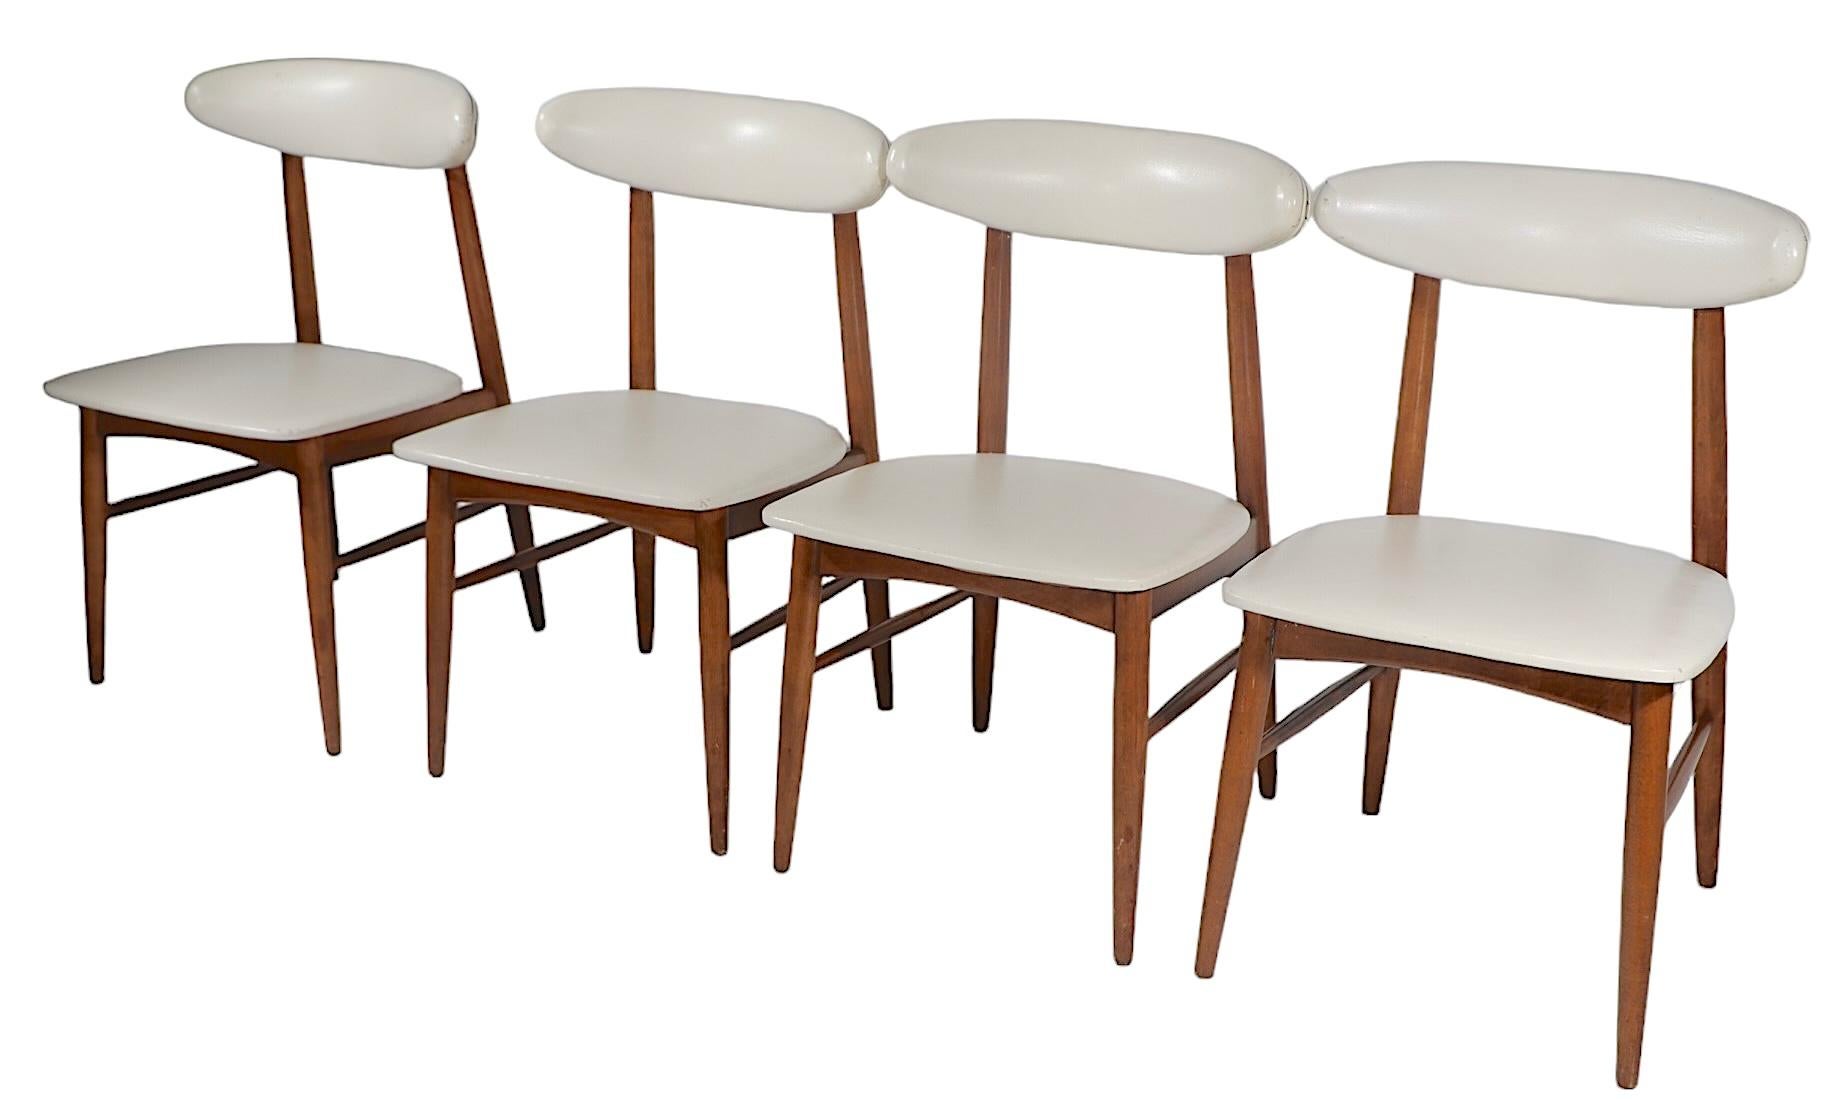 Mid Century Esstischgarnitur mit vier Stühlen und einem Esstisch.
Diese  Das Set wurde von Viko Baumritter um 1950/1960 herum entworfen. Es ist in einem guten, originalen Vintage-Zustand mit einigen Alters- und Gebrauchsspuren, spezifischer